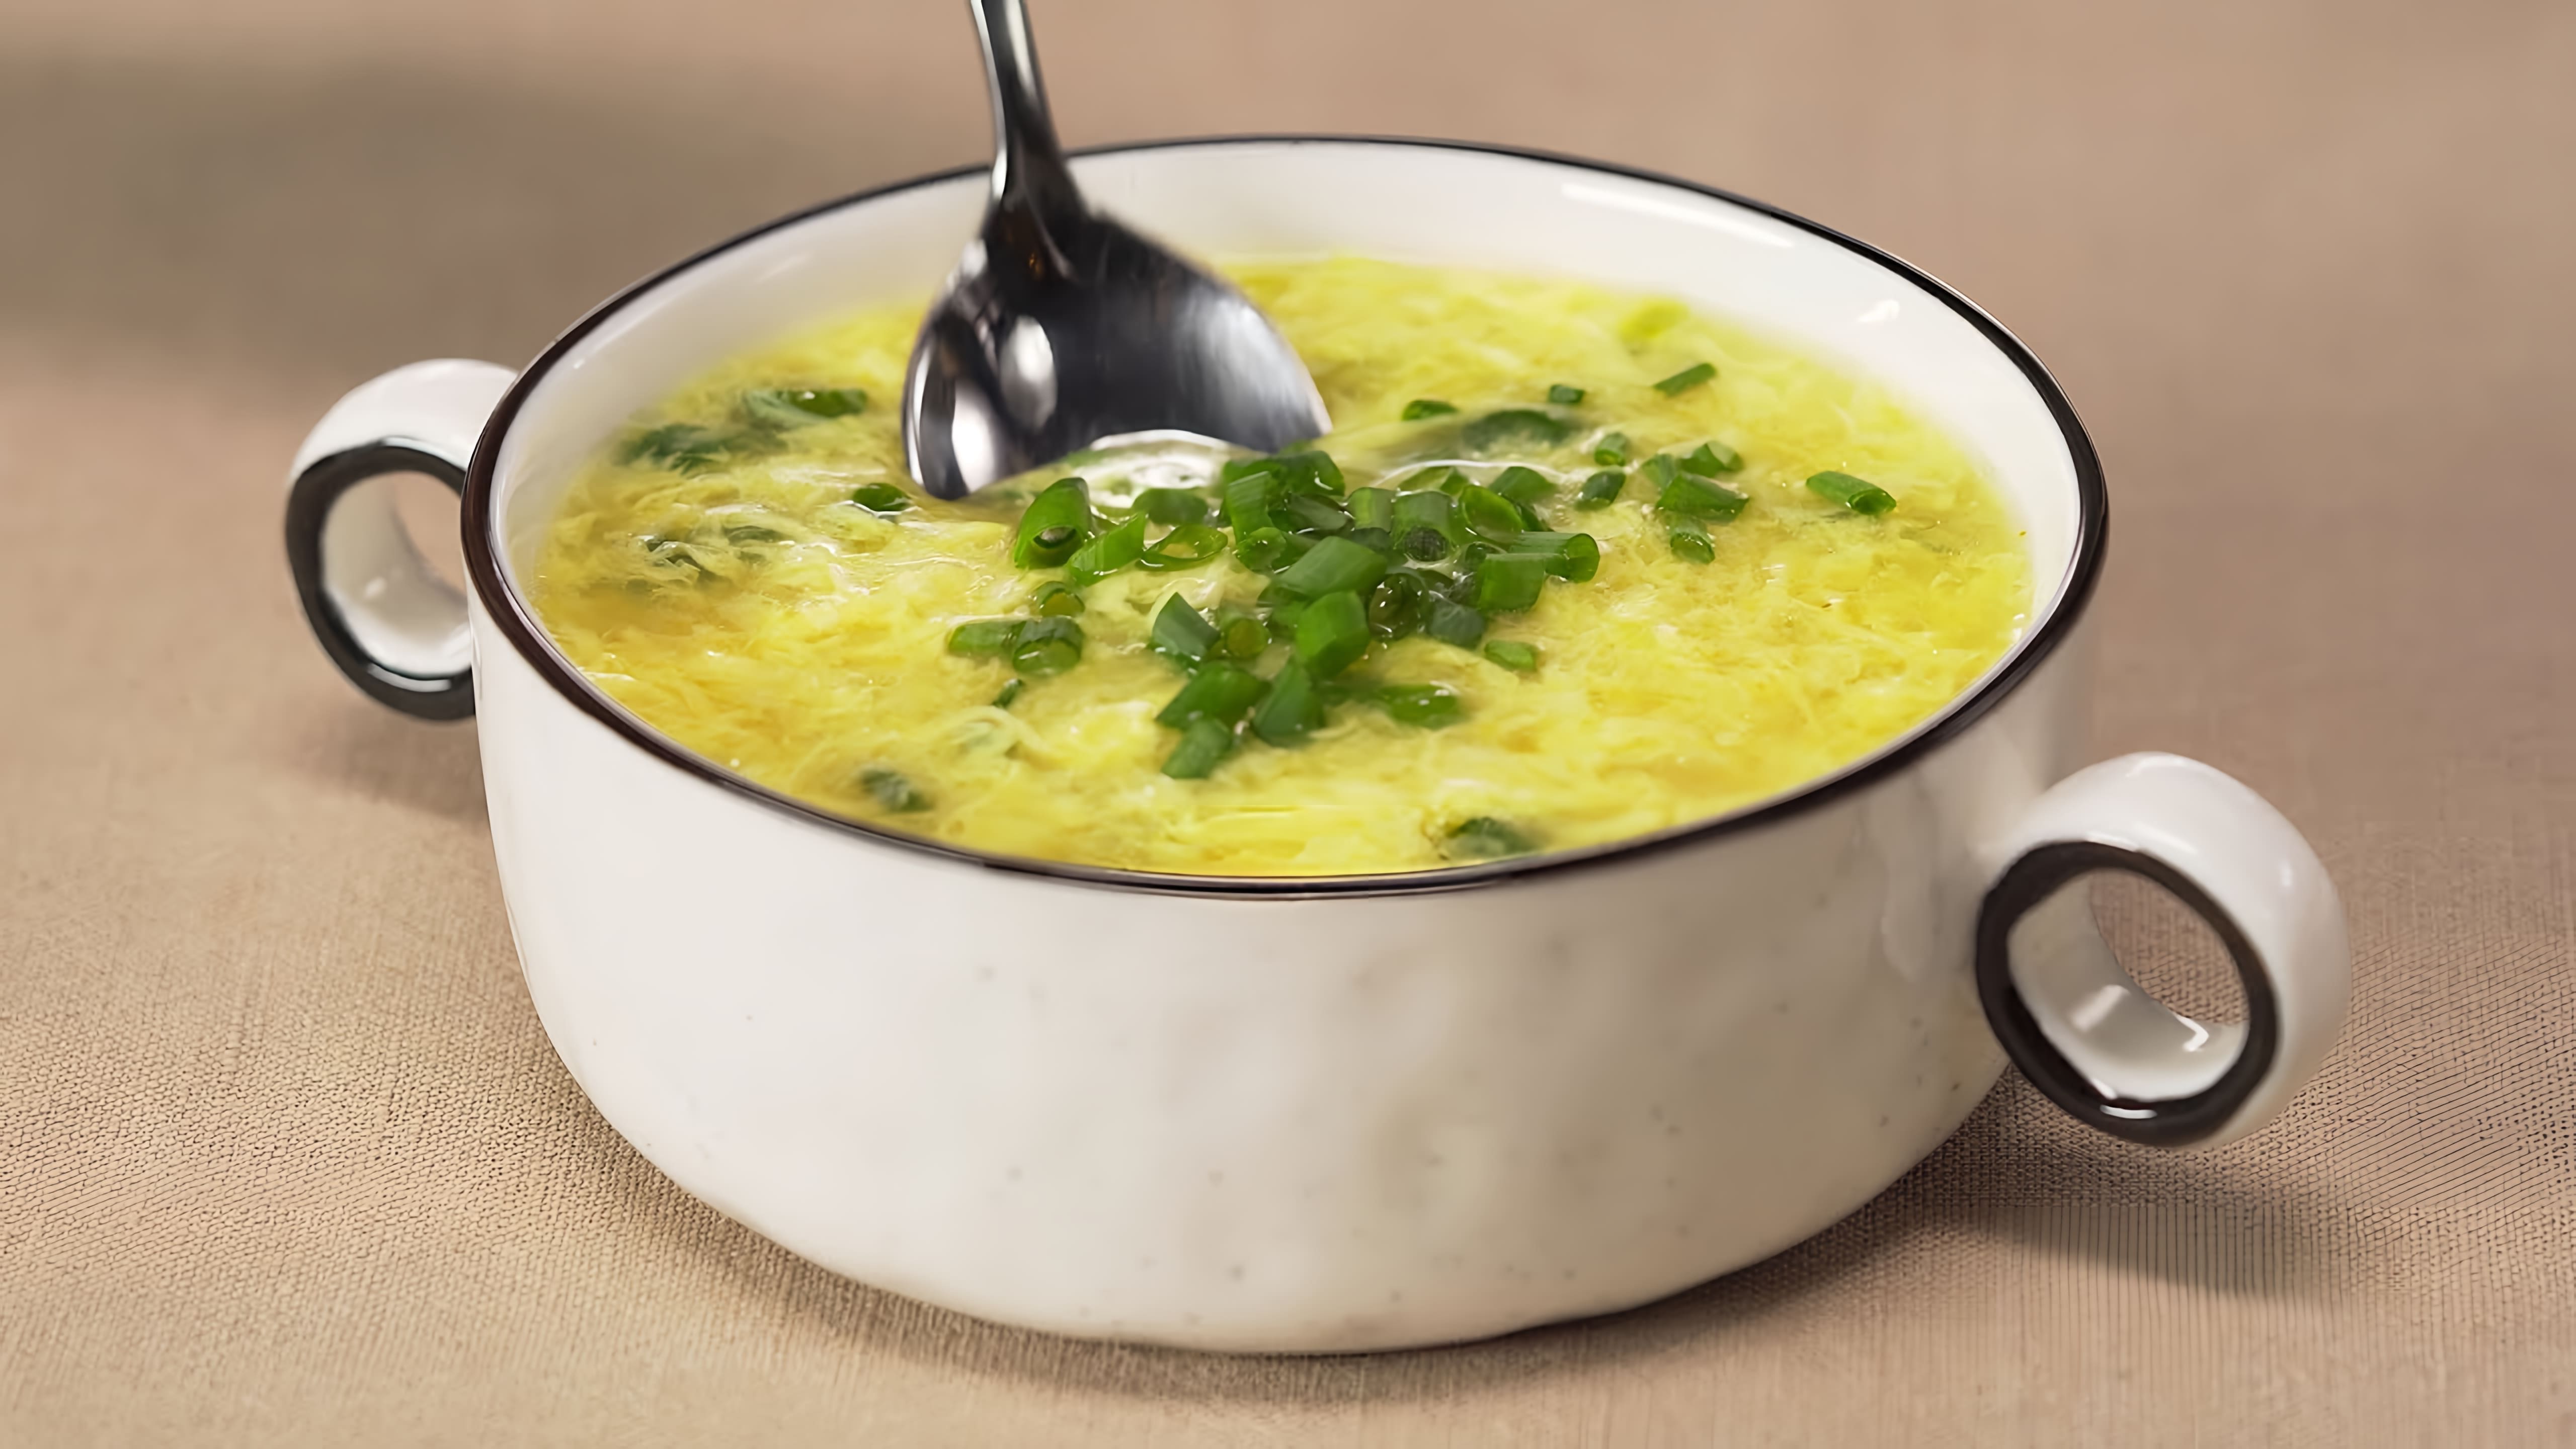 В этом видео демонстрируется рецепт приготовления популярного китайского супа "ЯИЧНЫЕ КАПЛИ" или "Dàn huā tāng"